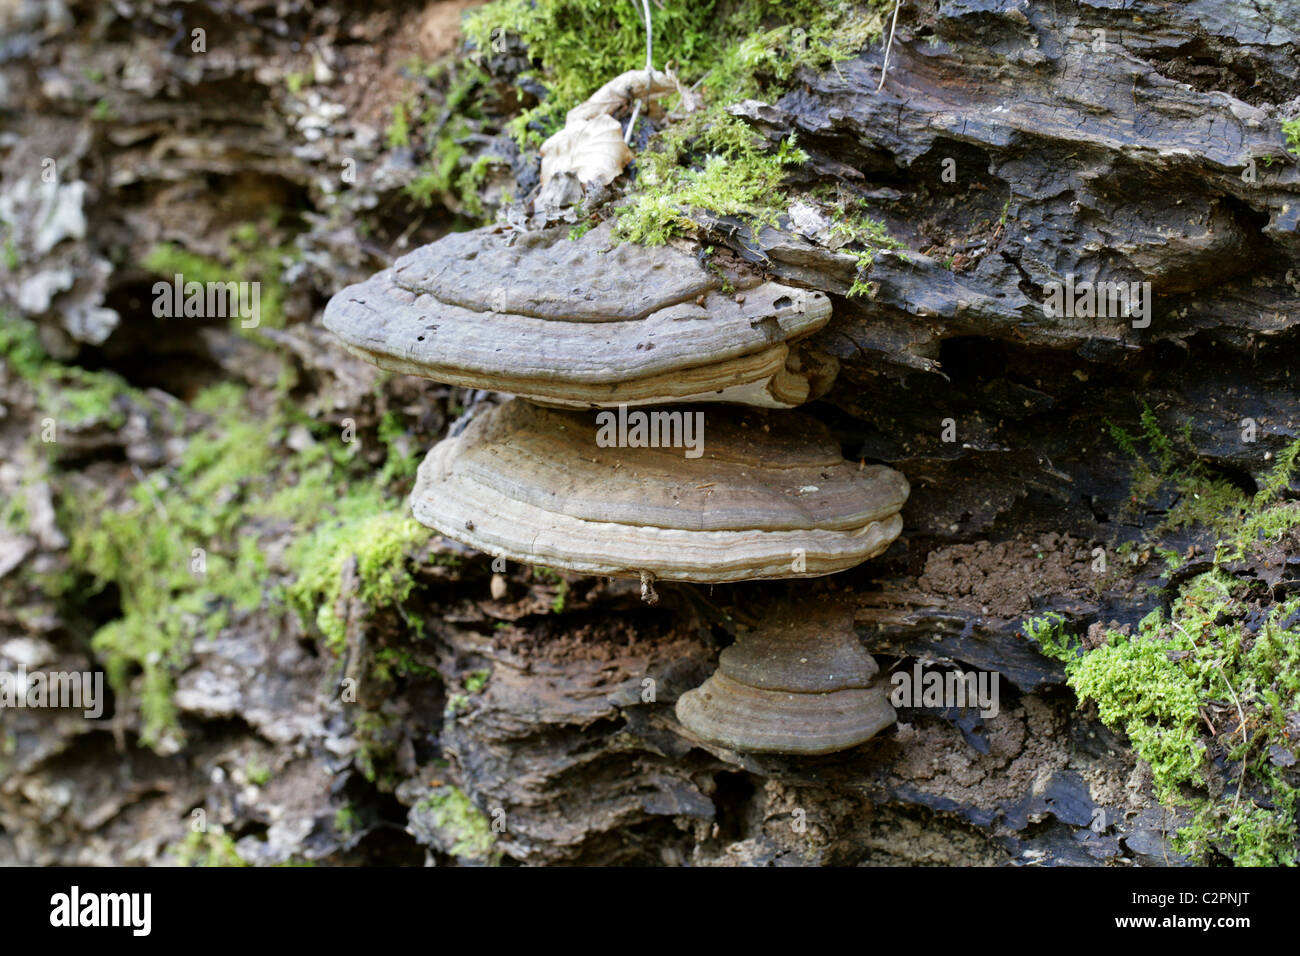 Tinder fungo, zoccolo di cavallo fungo, Tinder Polypore o uomo di ghiaccio fungo, Fomes fomentarius, Polyporaceae. Foto Stock